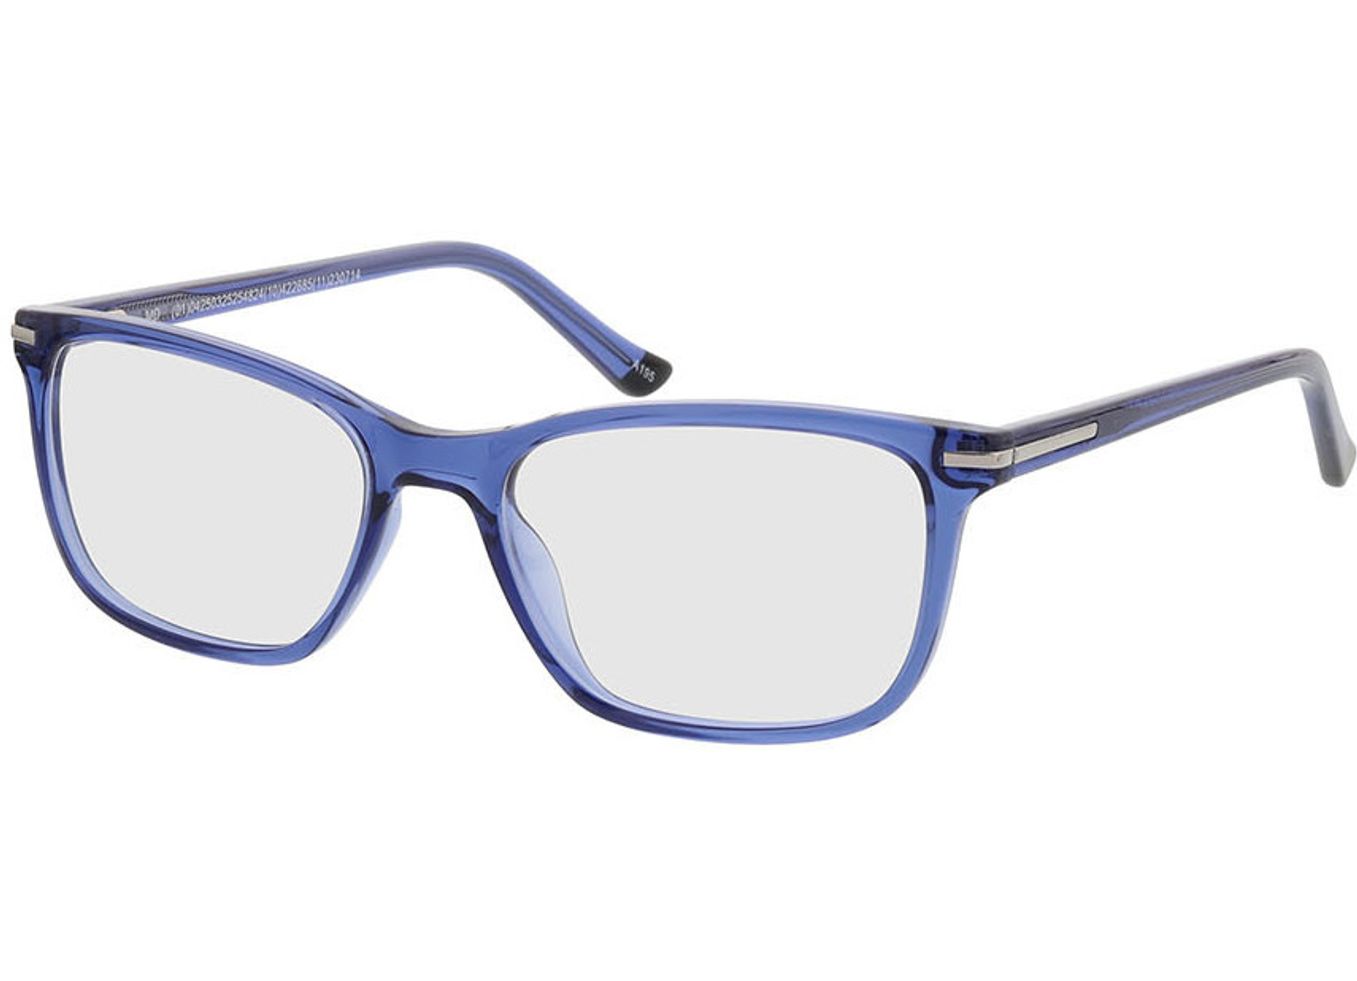 Lexington - blau Brillengestell inkl. Gläser, Vollrand, Rechteckig von Brille24 Collection